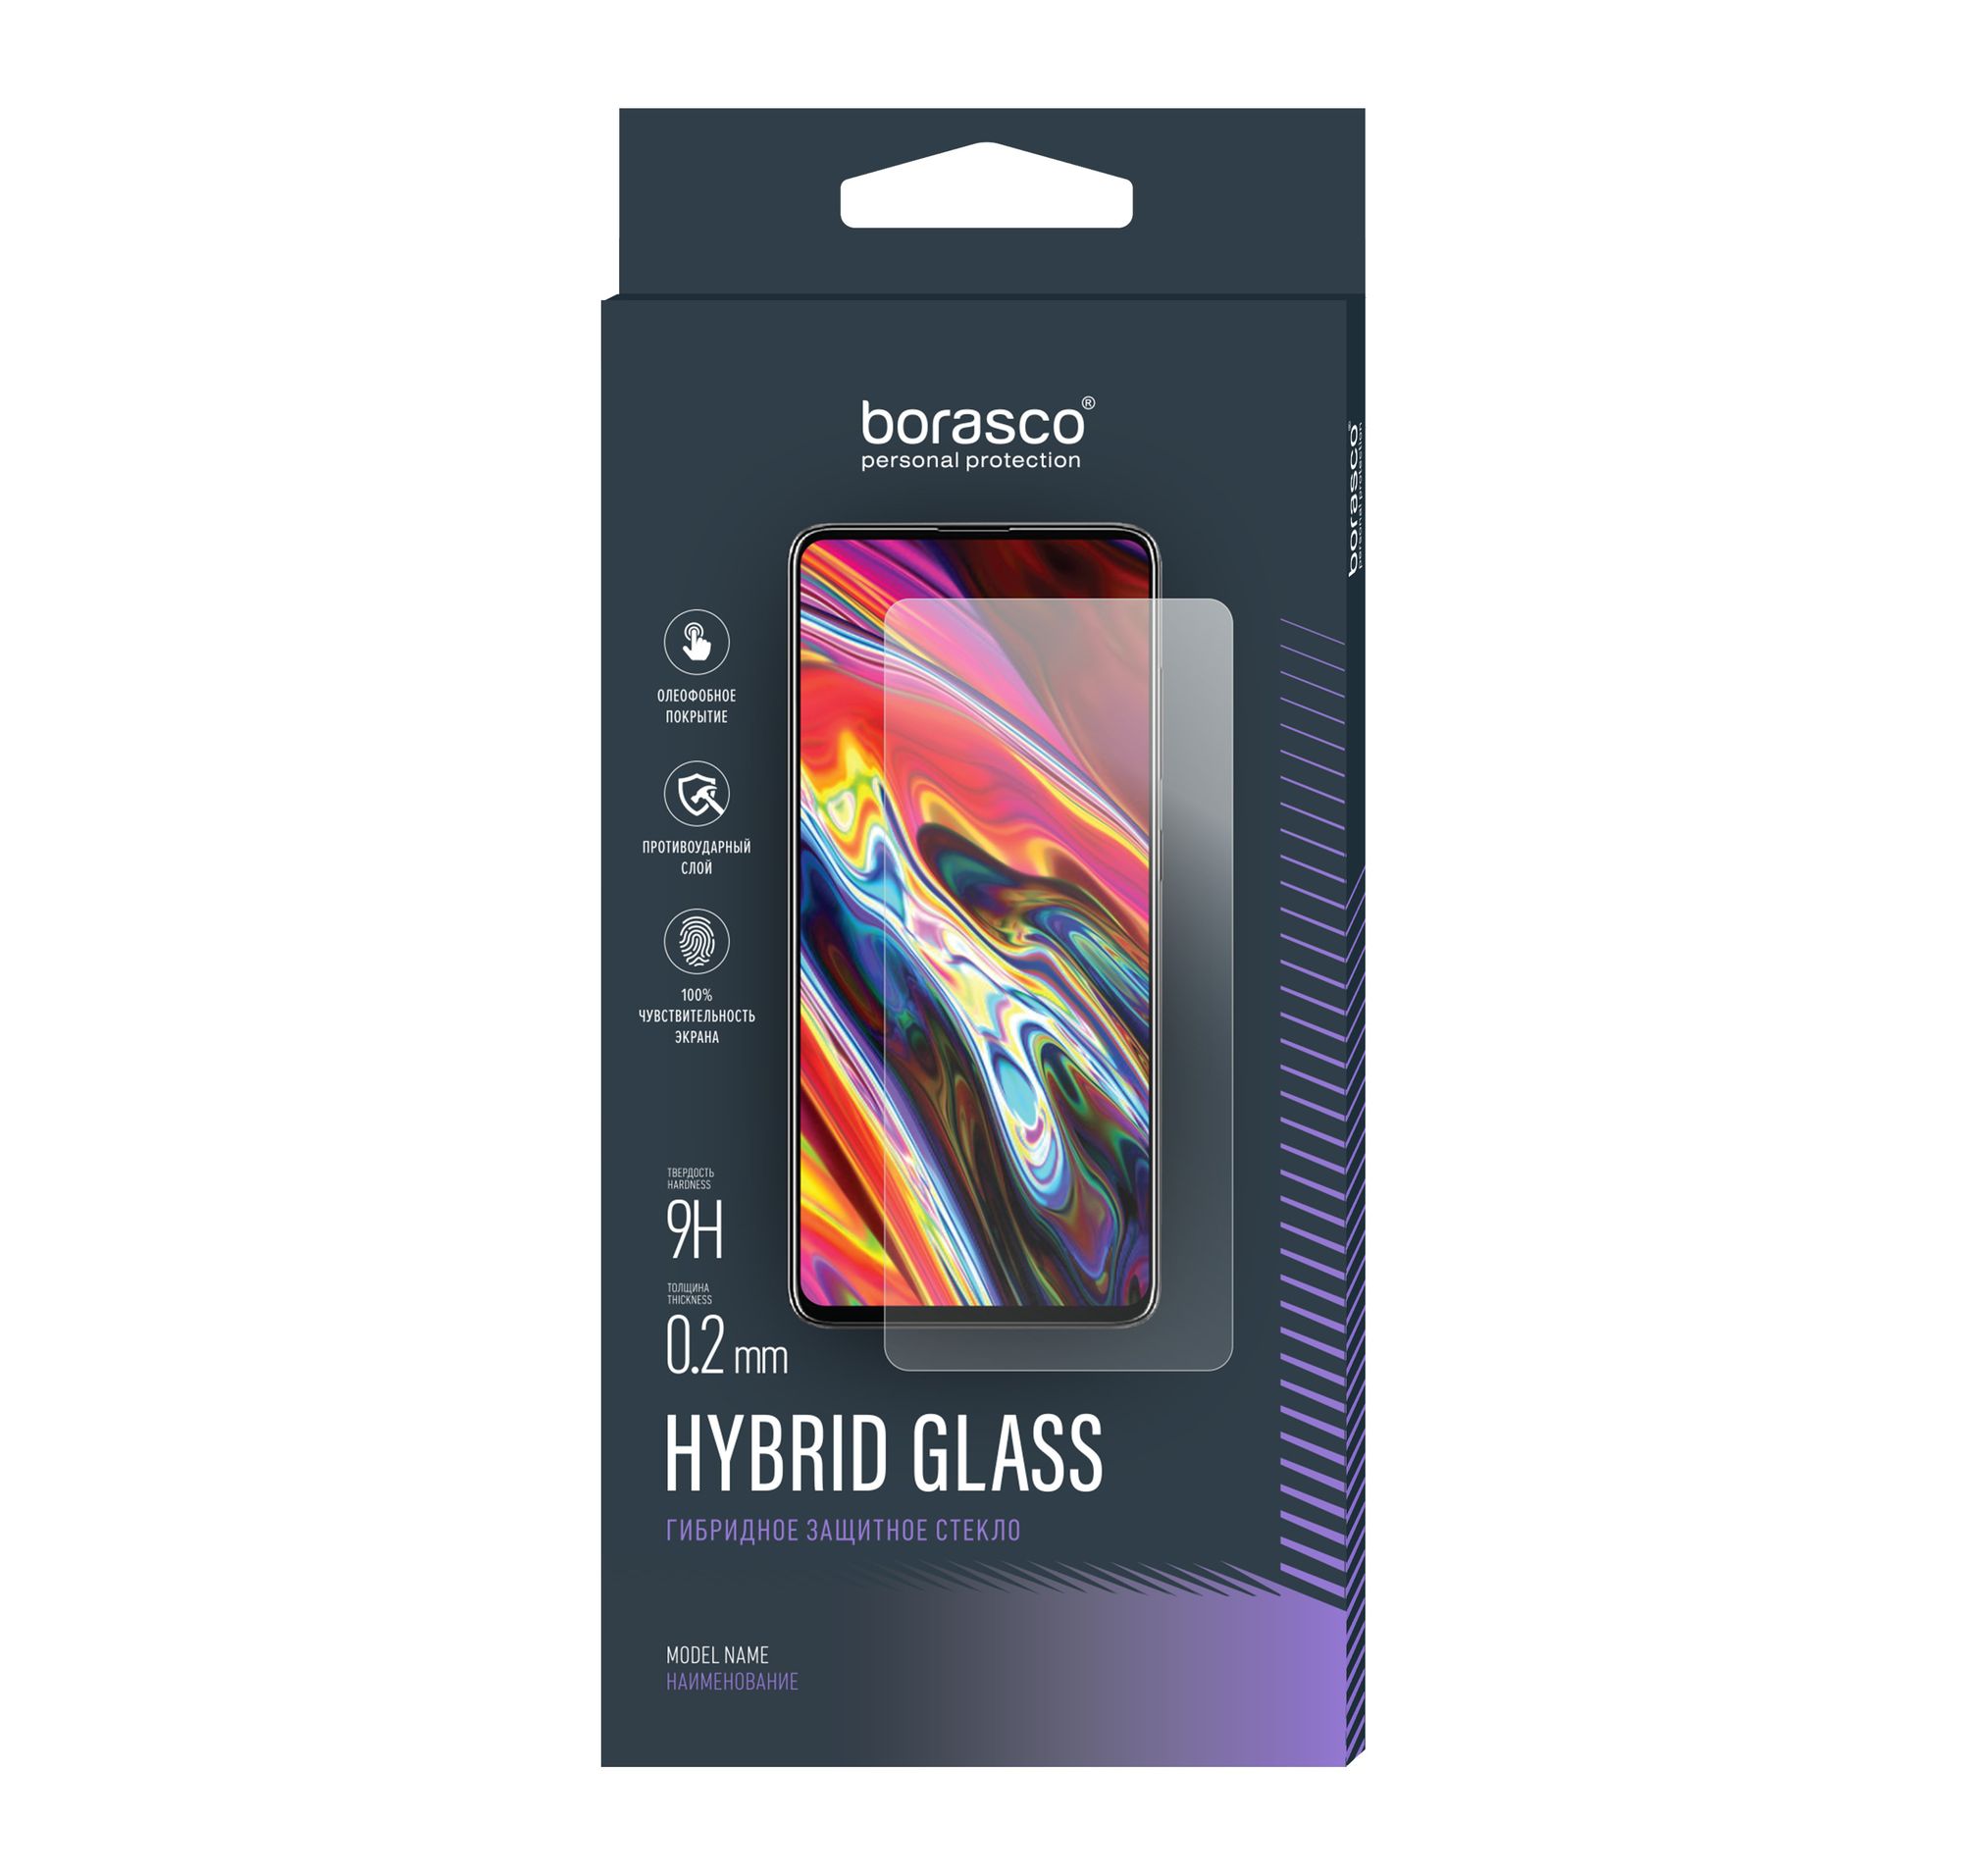 Стекло защитное Hybrid Glass VSP 0,26 мм для Huawei Y6 (2019)/ Honor 8A стекло камеры для huawei honor 8a jat lx1 jat l29 honor 8a pro jat l41 без рамки